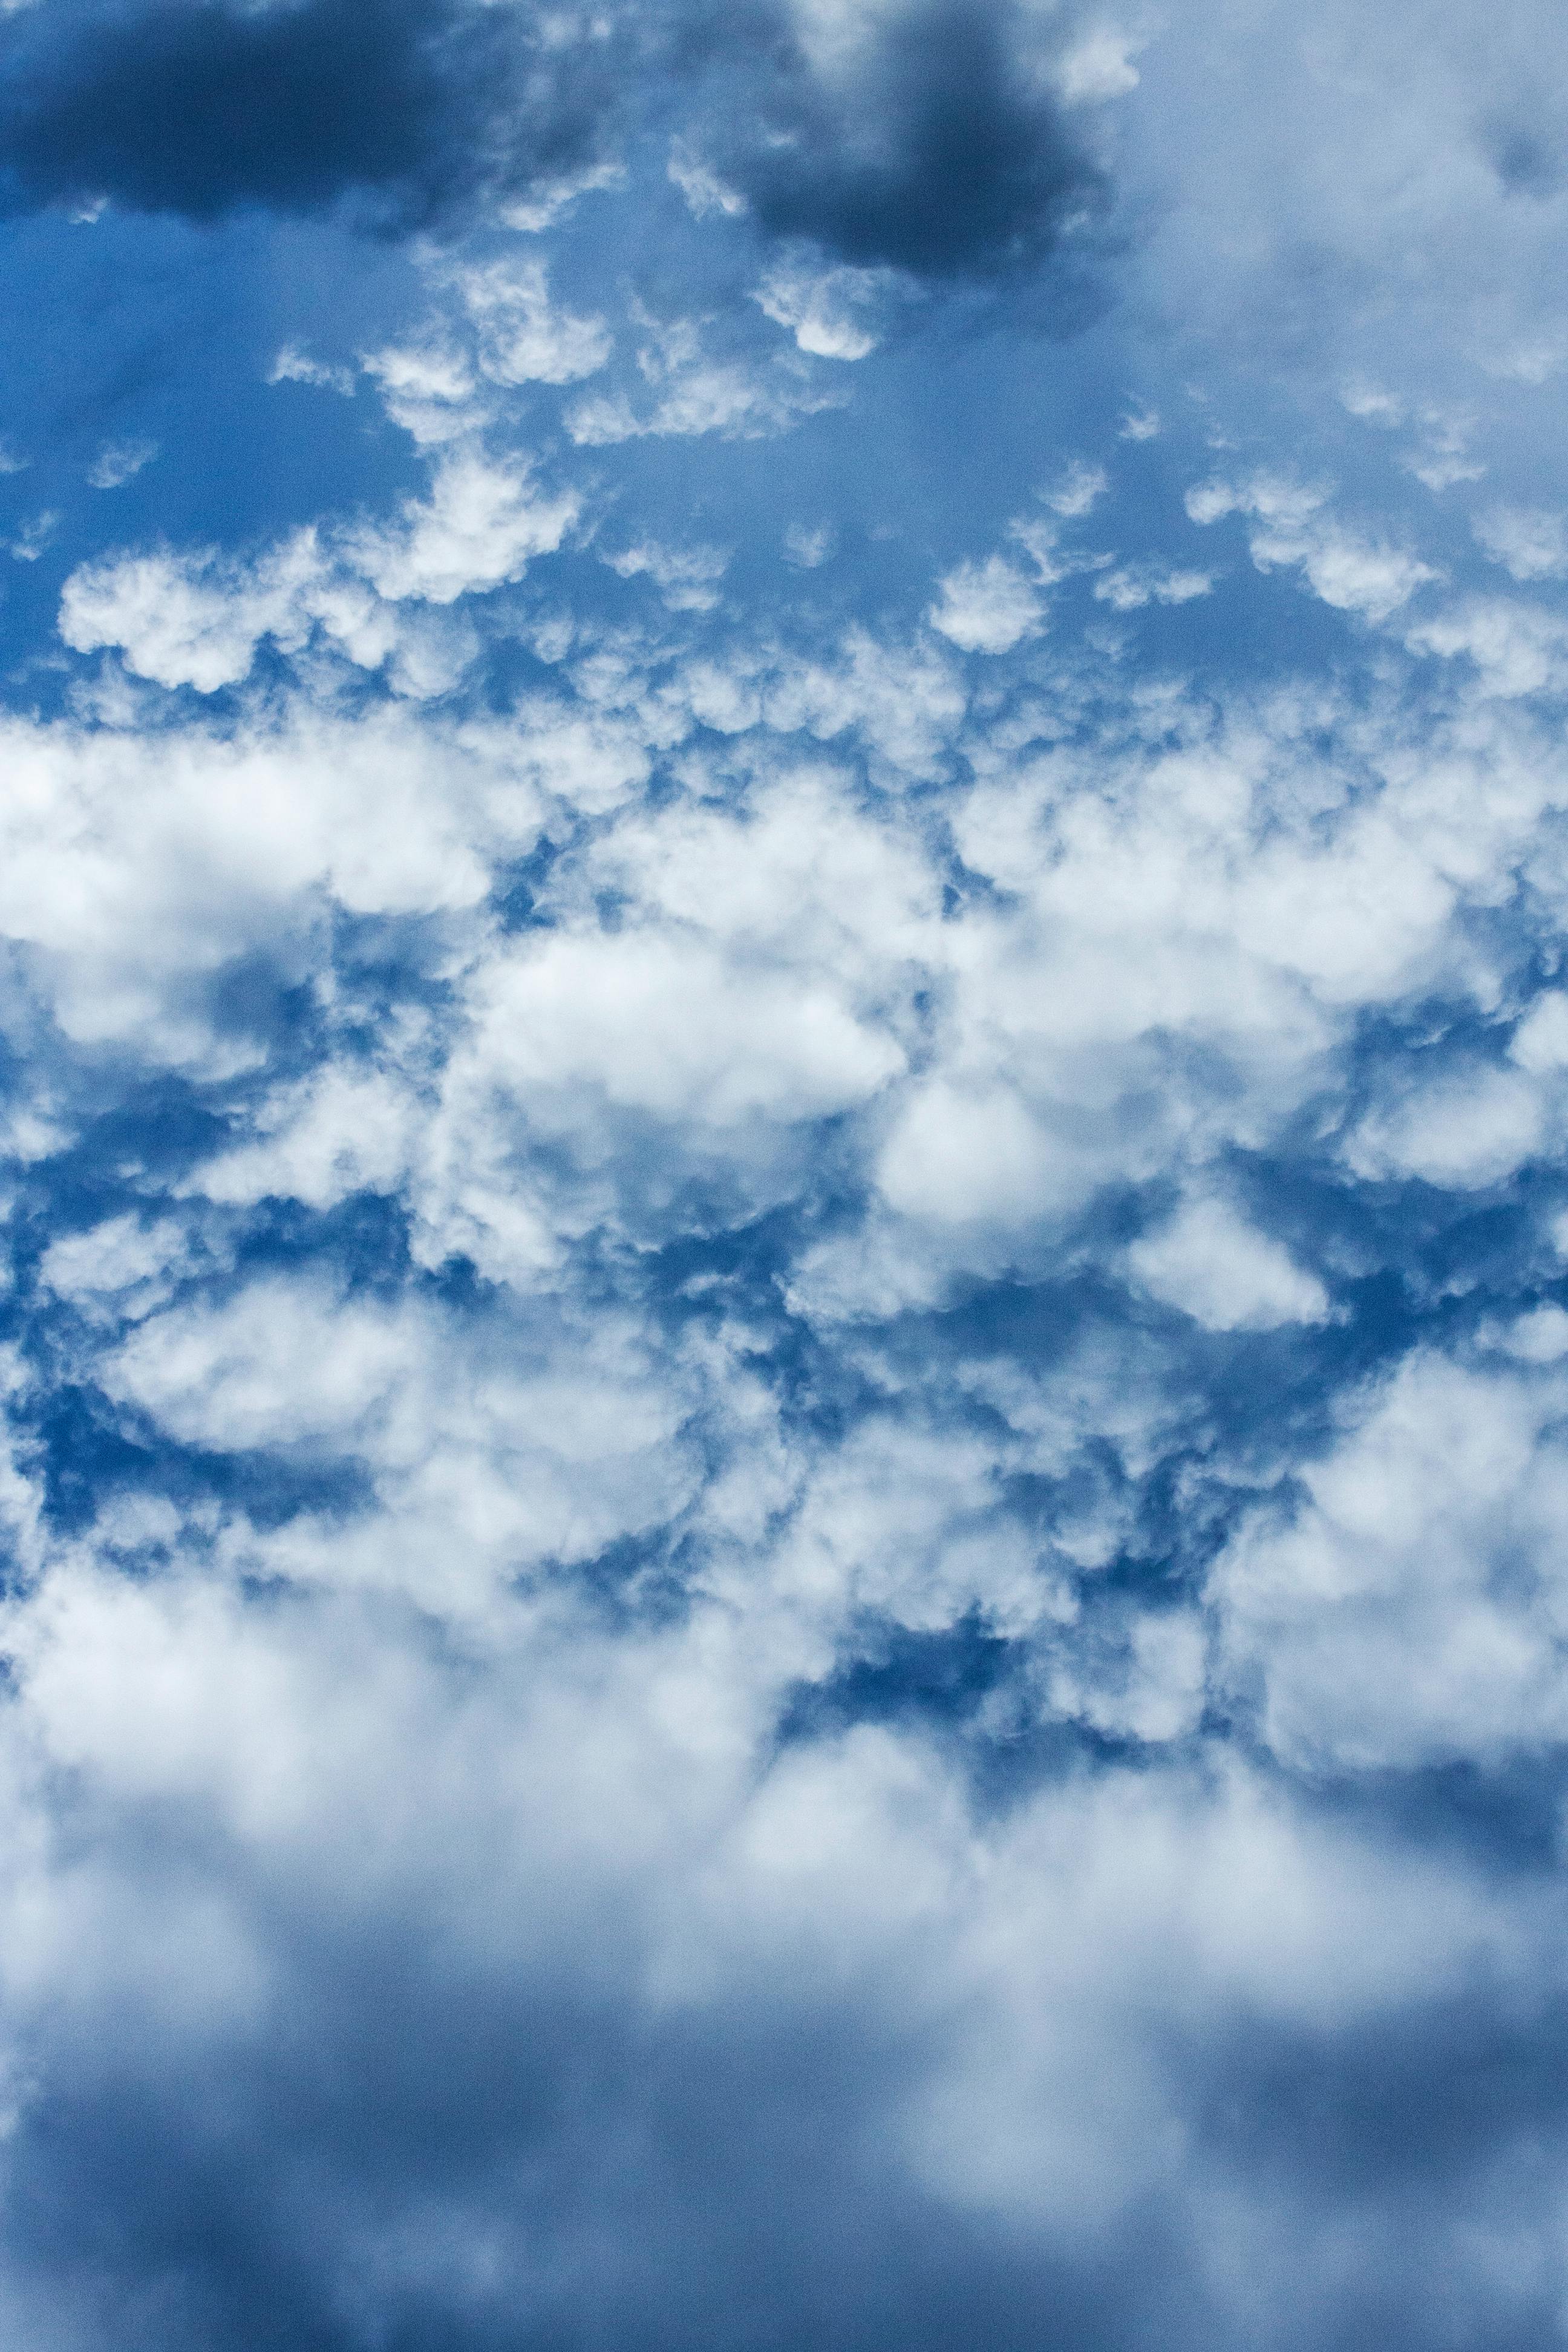 Hình nền đám mây luôn làm cho màn hình của bạn trông tuyệt đẹp hơn. Với nhiều ảnh nền đám mây miễn phí tốt nhất, bạn sẽ không còn phải lo lắng về việc chọn hình nền thích hợp. Hãy truy cập ngay để tải về những bức ảnh đẹp mắt này.